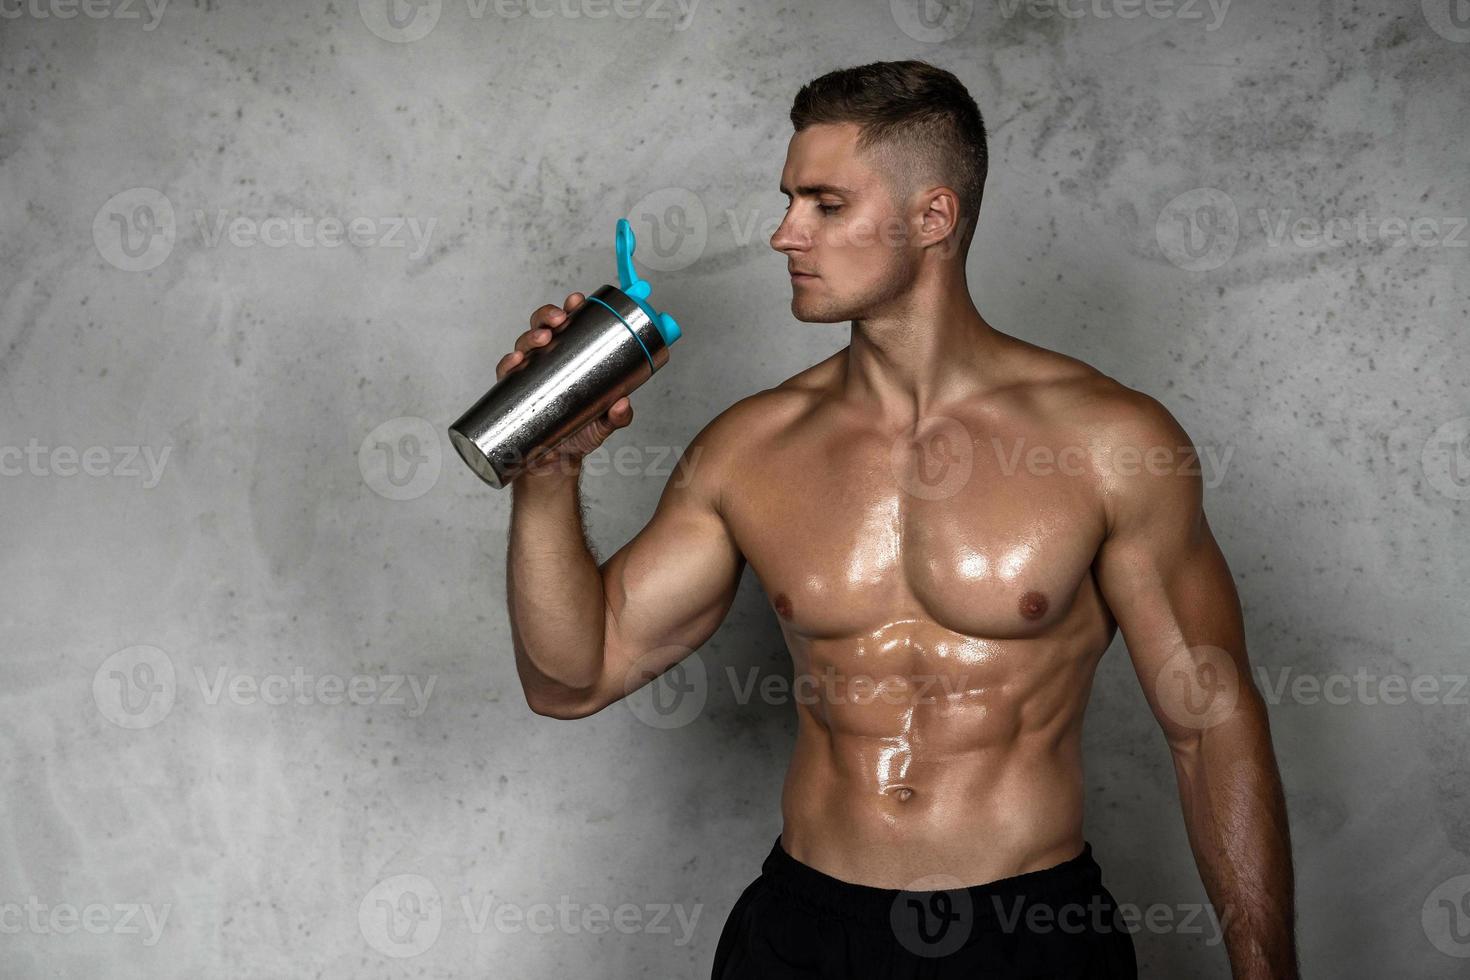 homem musculoso bebendo whey protein ou outro suplemento esportivo foto